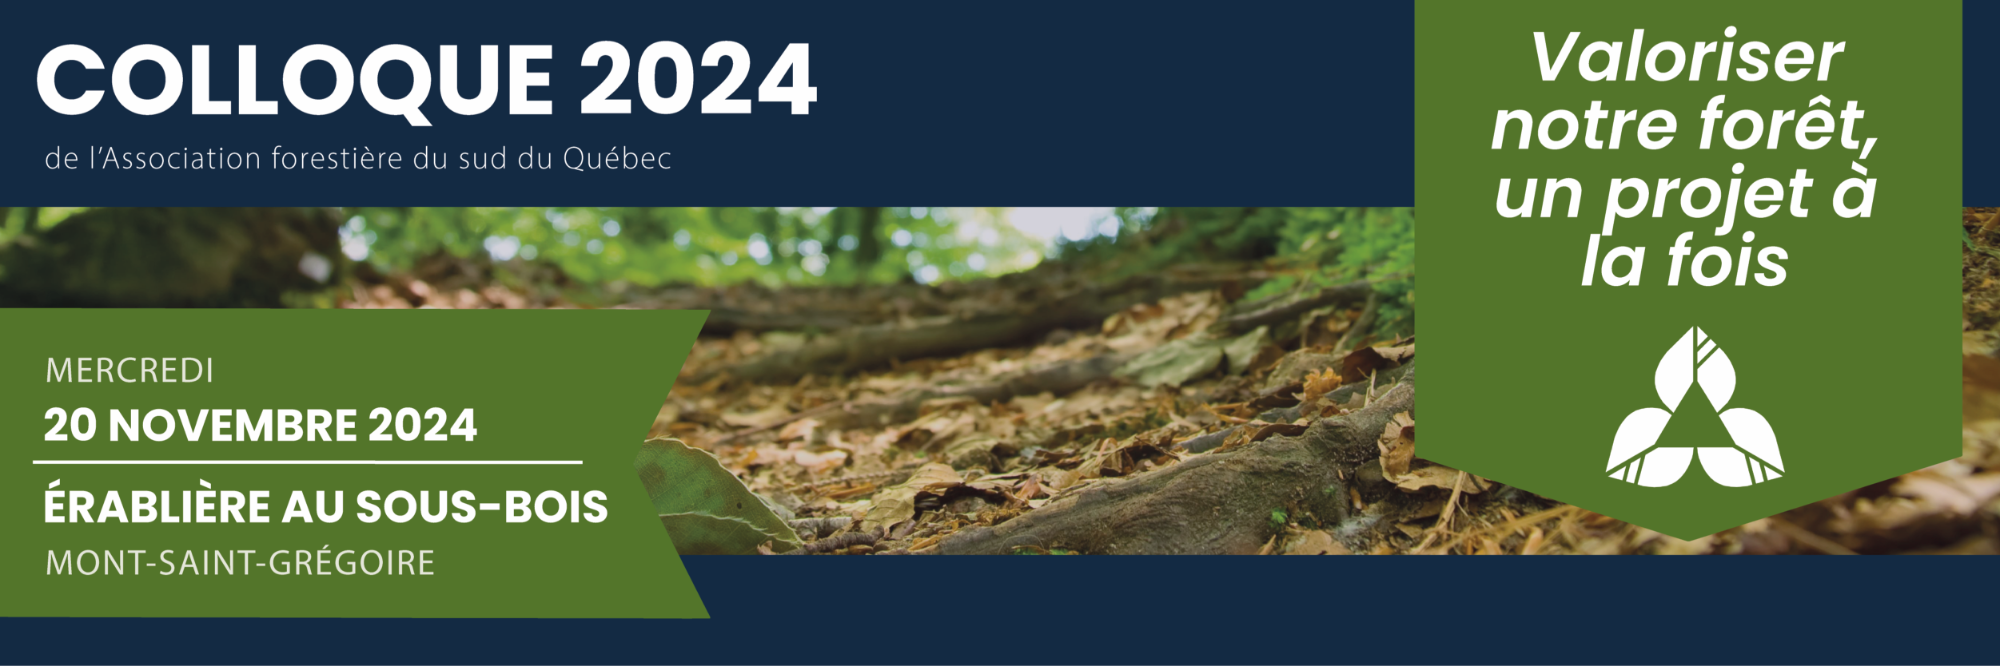 Colloque 2024 de l'Association forestière du sud du Québec